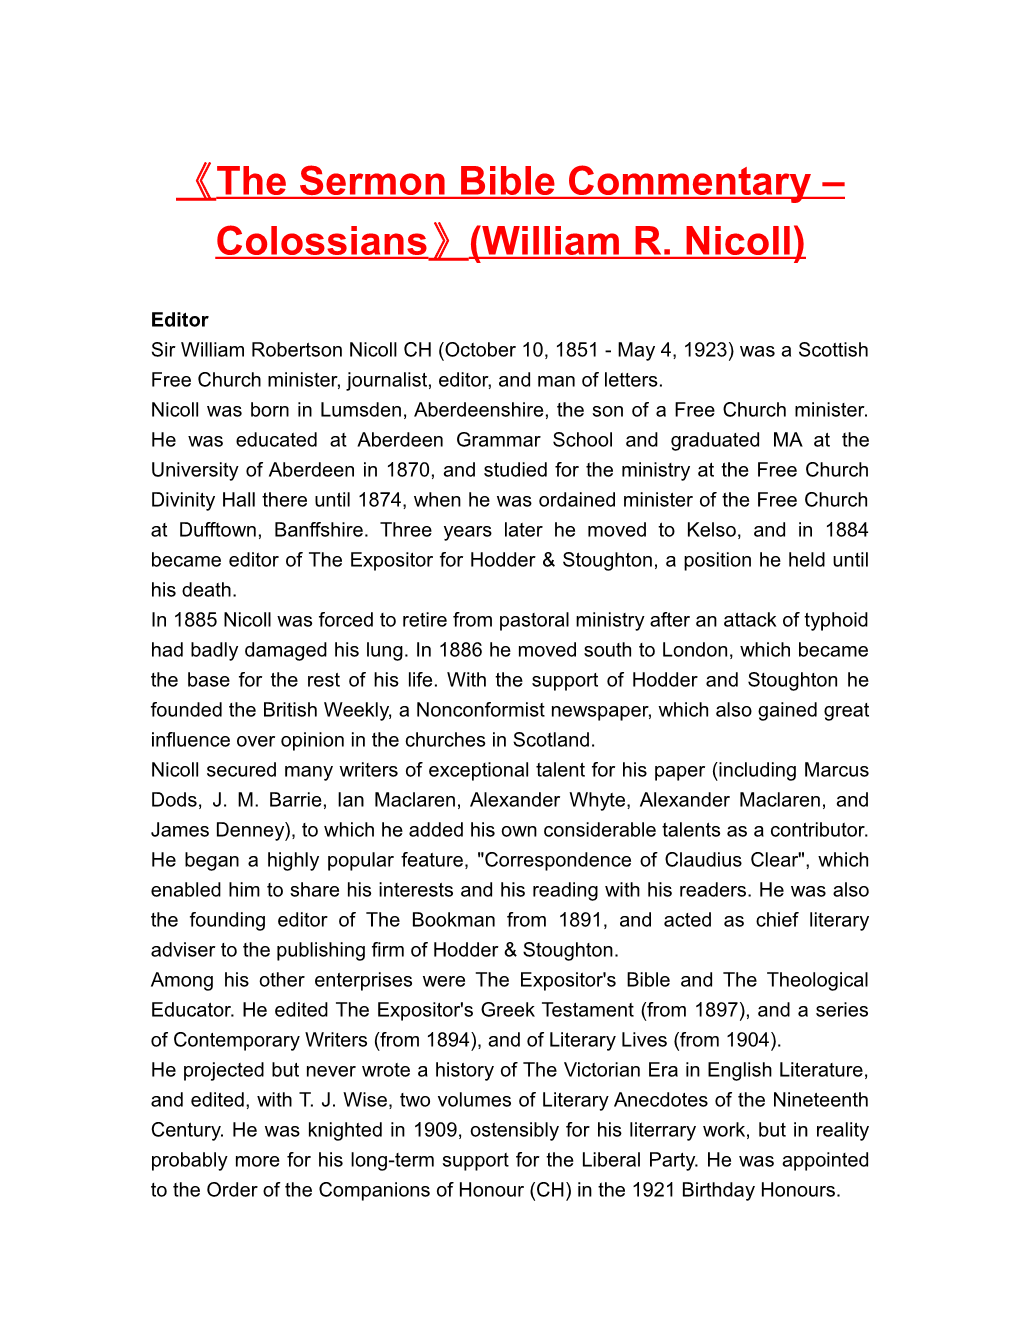 The Sermon Bible Commentary Colossians (William R. Nicoll)